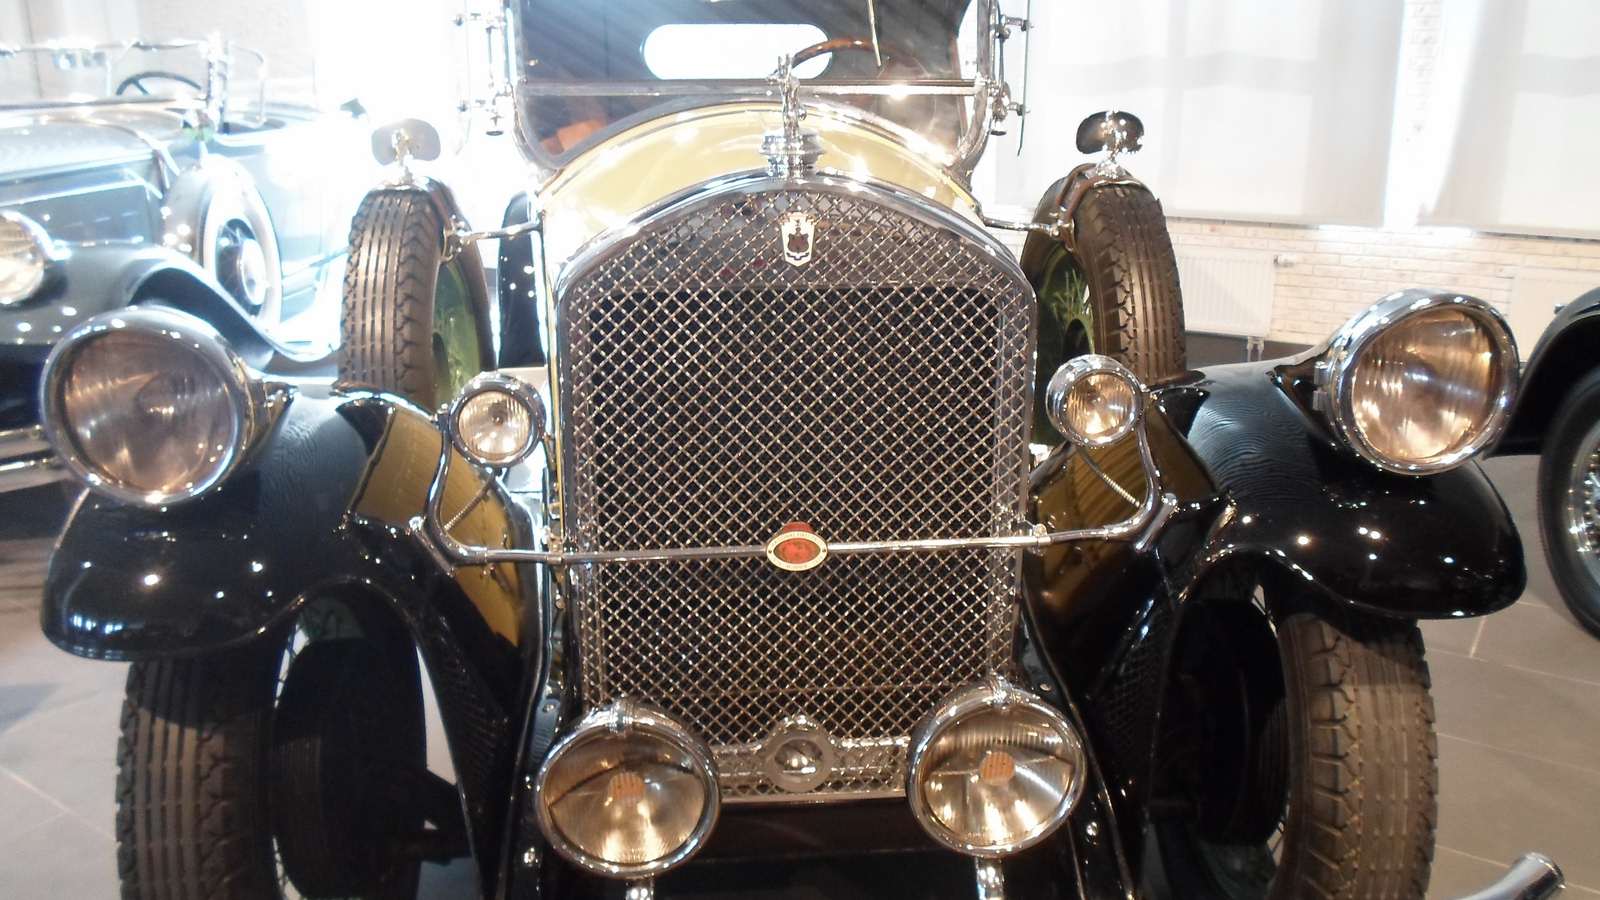 1928. Pierce-Arrow 81 Roadster